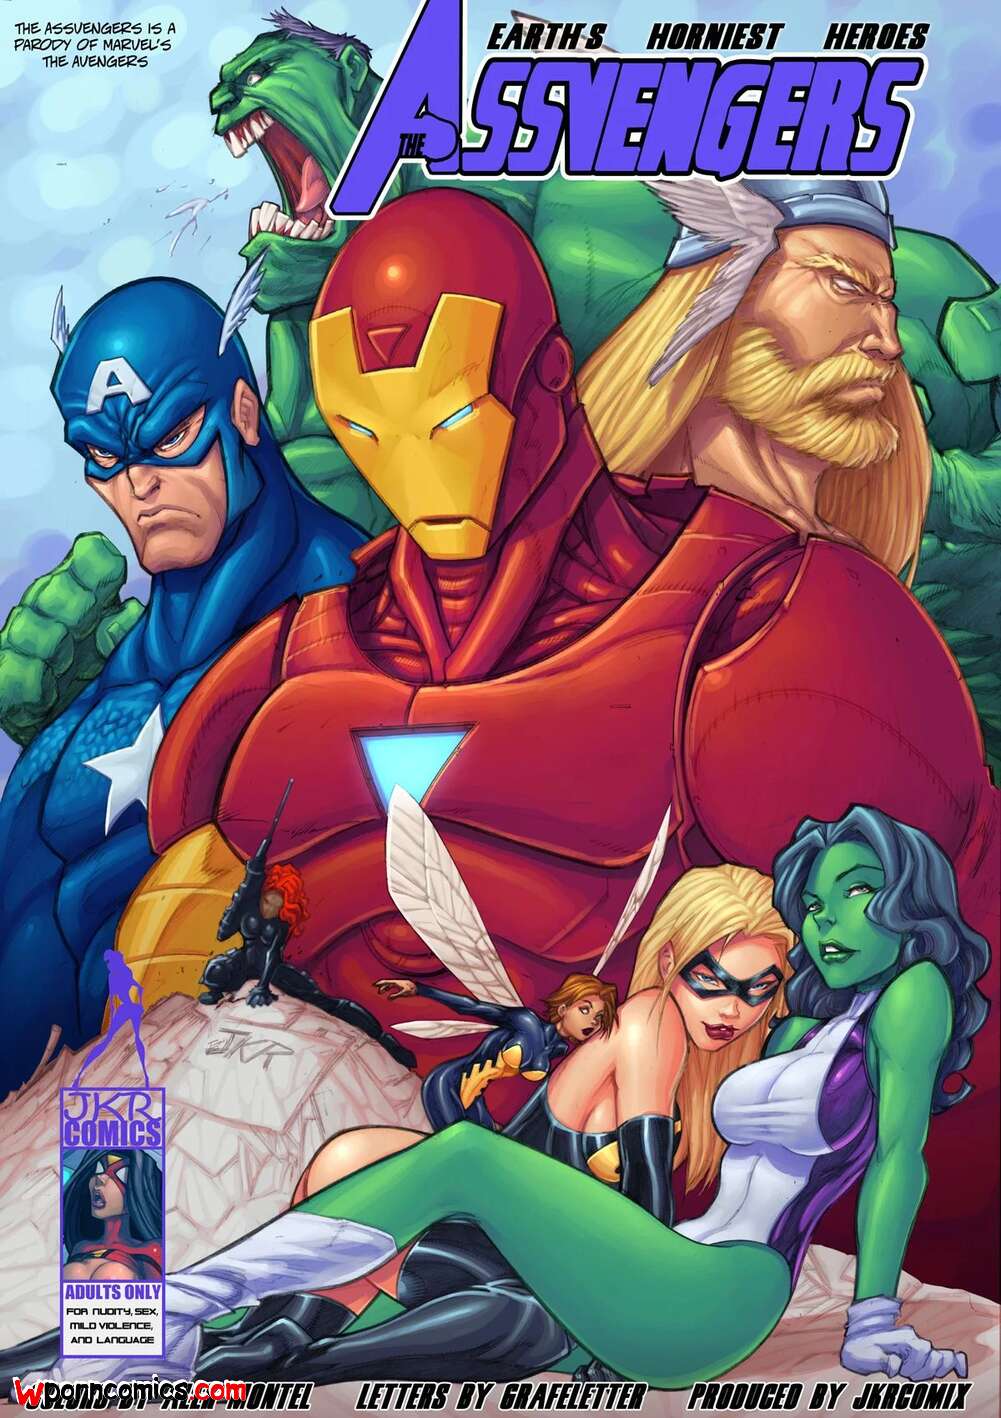 Nude Cartoon Avengers - âœ…ï¸ Porn comic Assvengers. Chapter 1. The Avengers. JKRComix. Sex comic hot  Avengers babes | Porn comics in English for adults only | sexkomix2.com